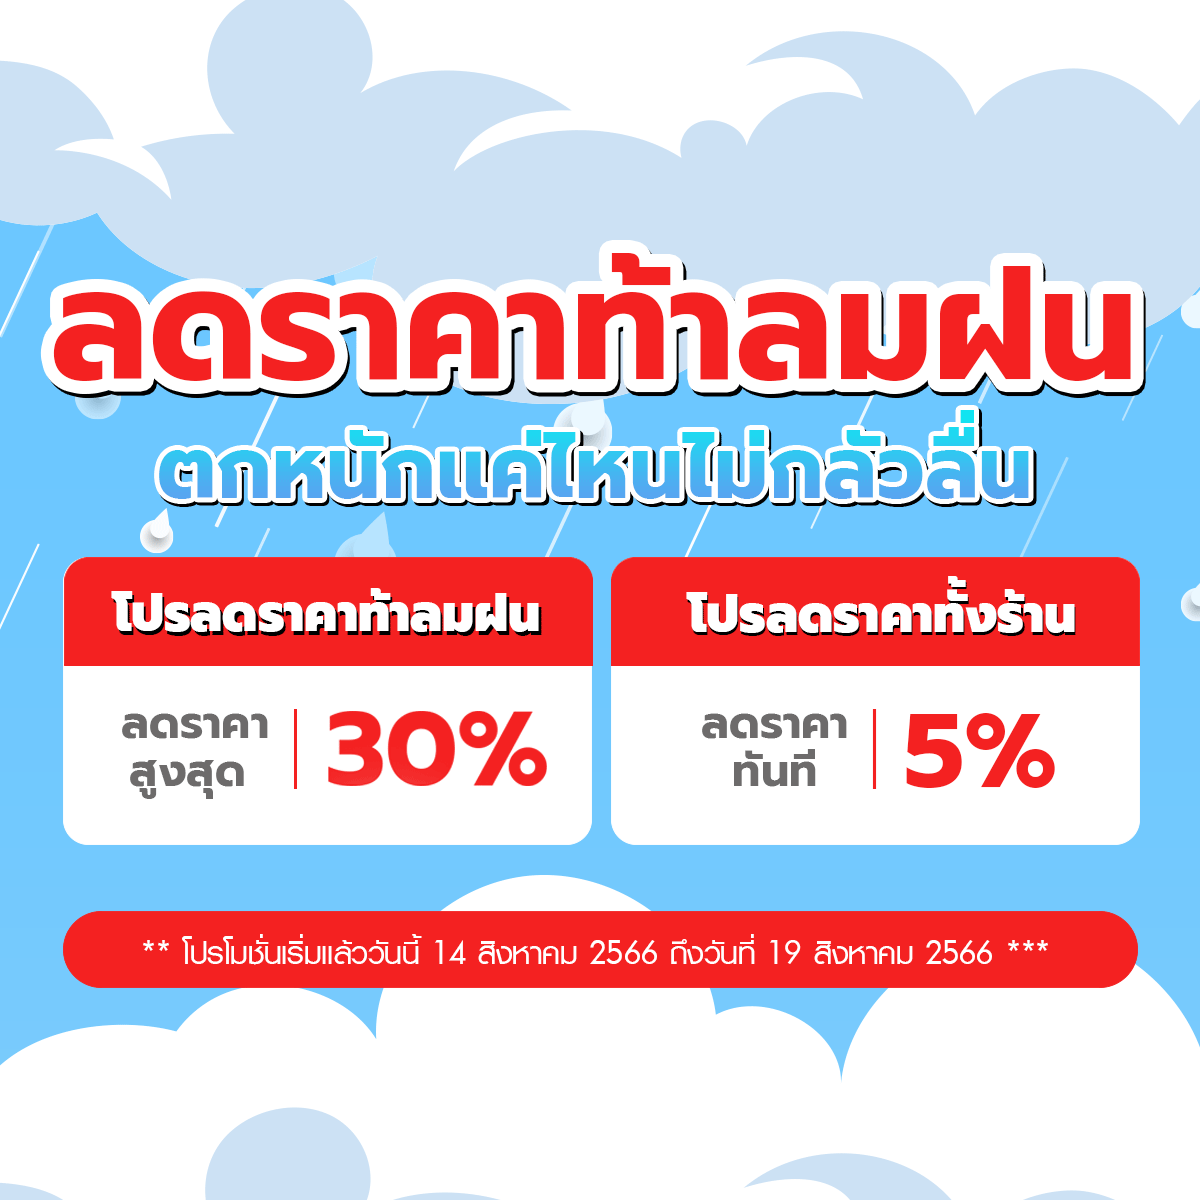 โปรโมชั่นลดราคา GETFLOORMAT ท้าลมฝน ทั้งร้าน 5% ลดสูงสุด 30%